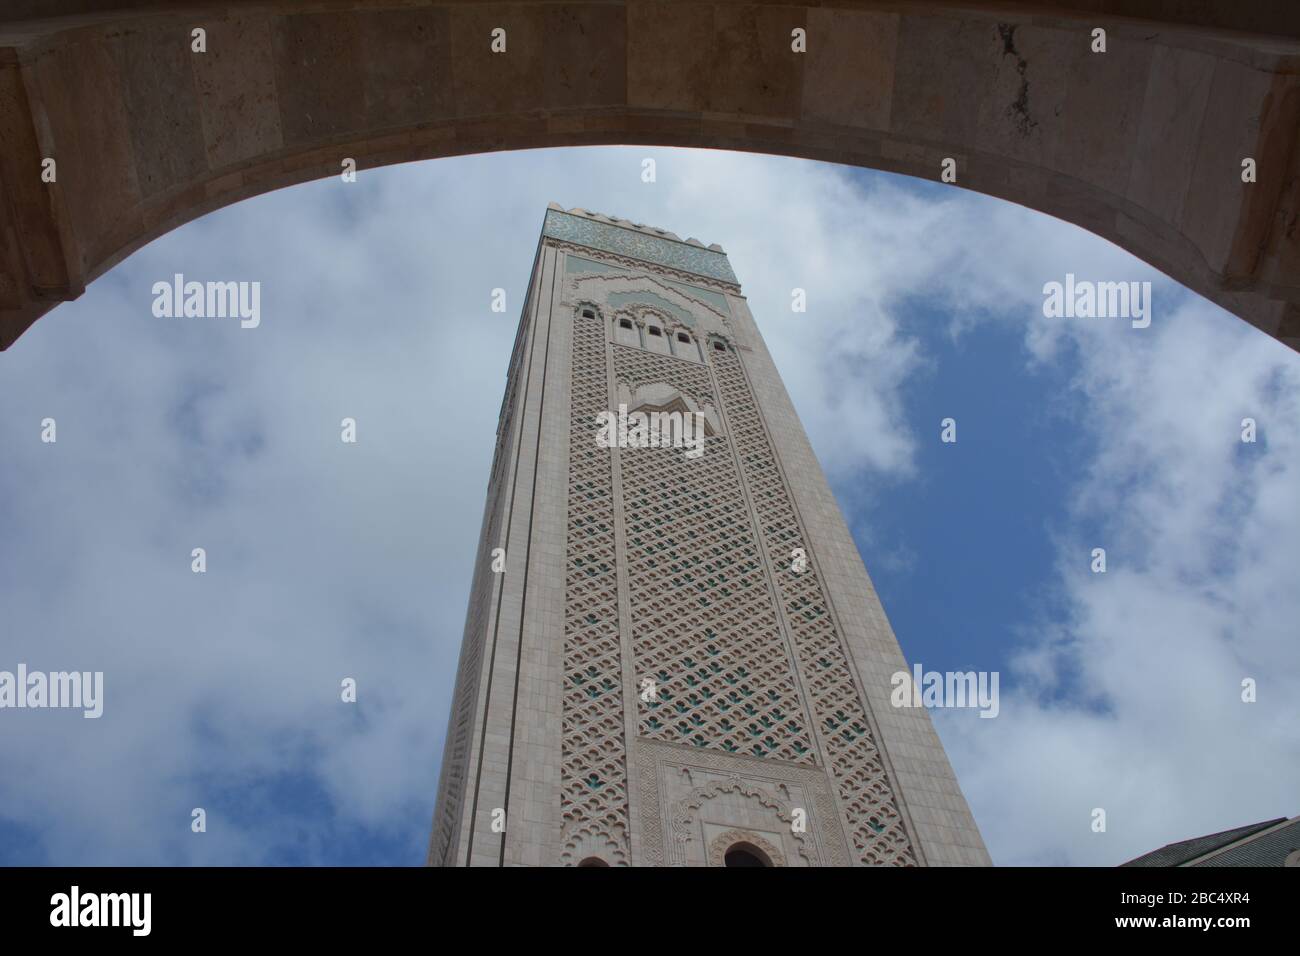 Il minareto più grande del mondo, alto 210 m, si trova presso la moschea di Hassan II, Casablanca, Marocco, vista qui attraverso una delle arcate della struttura moderna. Foto Stock